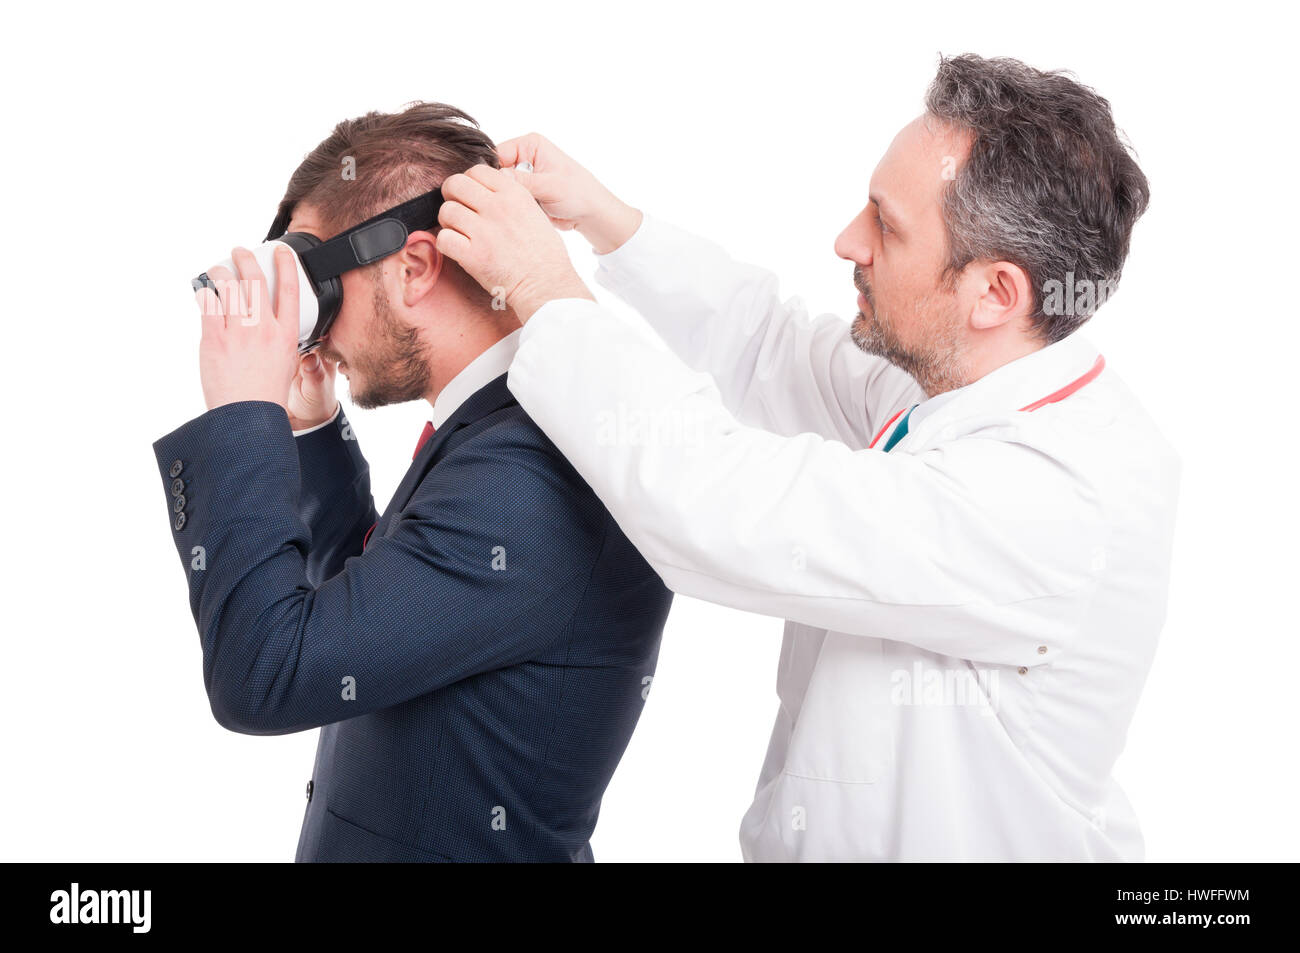 Homme medic mettre appareil vr sur le manager général de faire l'expérience de réalité virtuelle isolated on white Banque D'Images